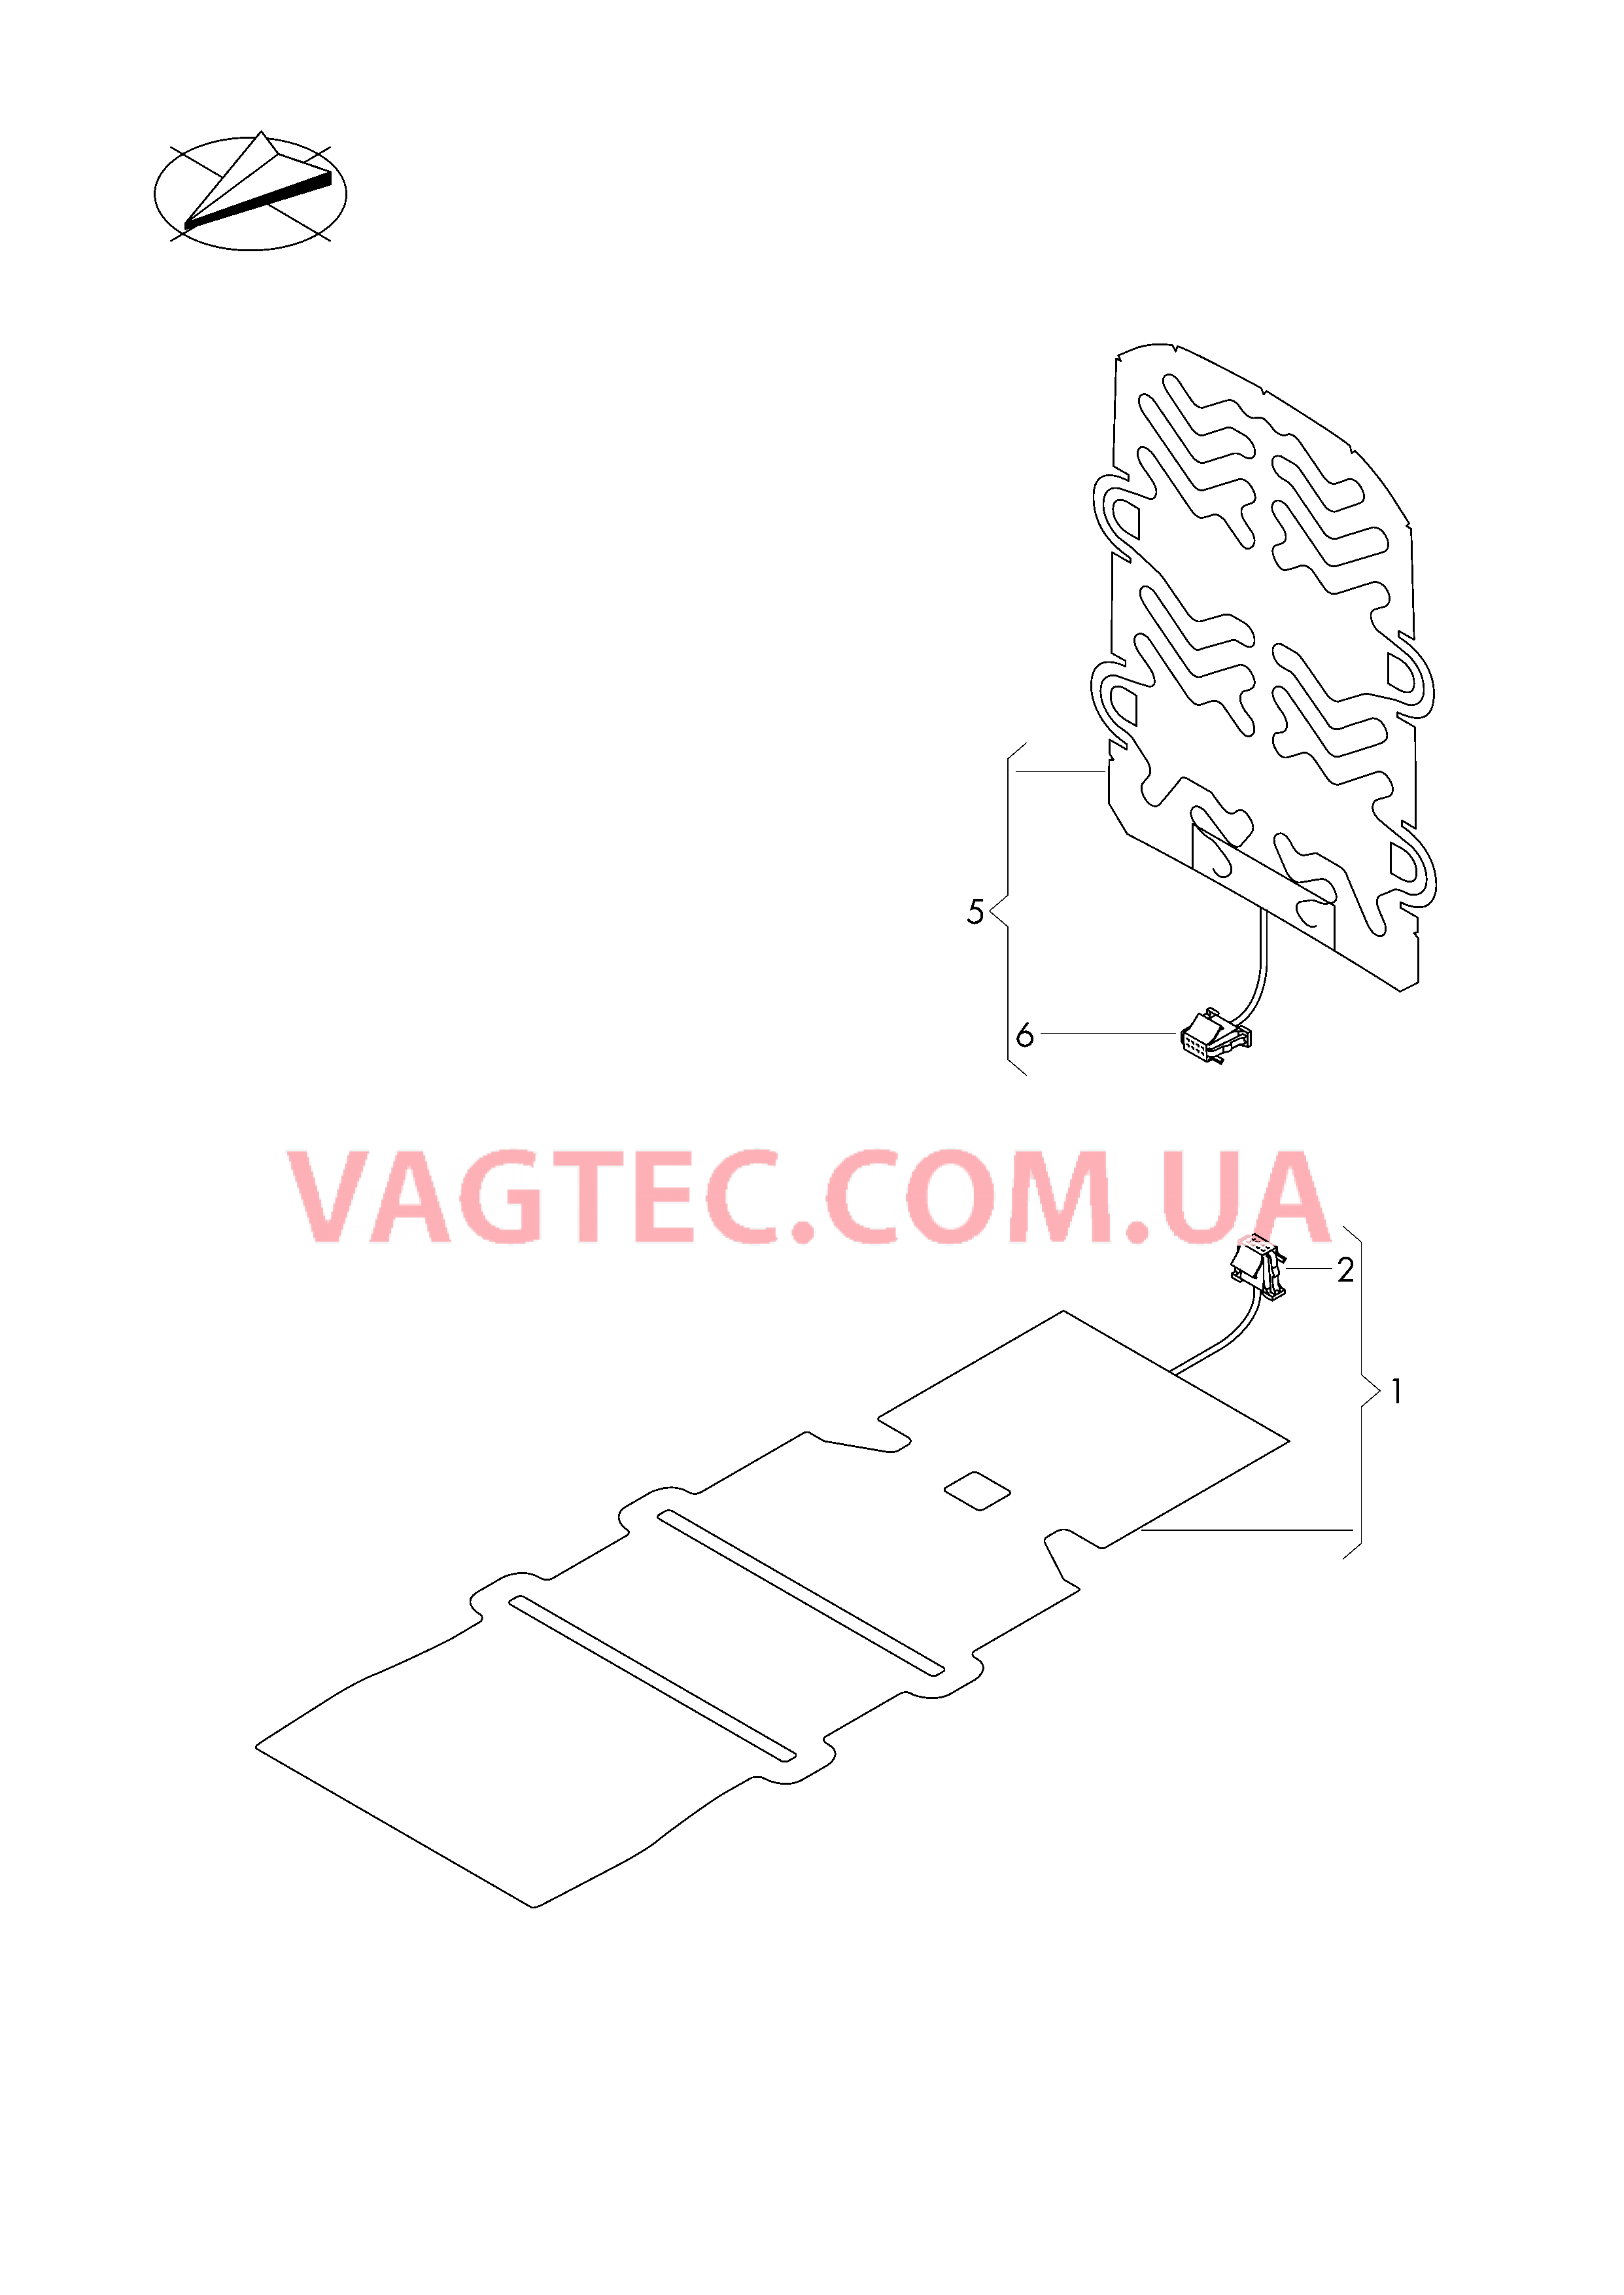 Электродетали для обогрева подушки и спинки сиденья  для VOLKSWAGEN Passat 2017